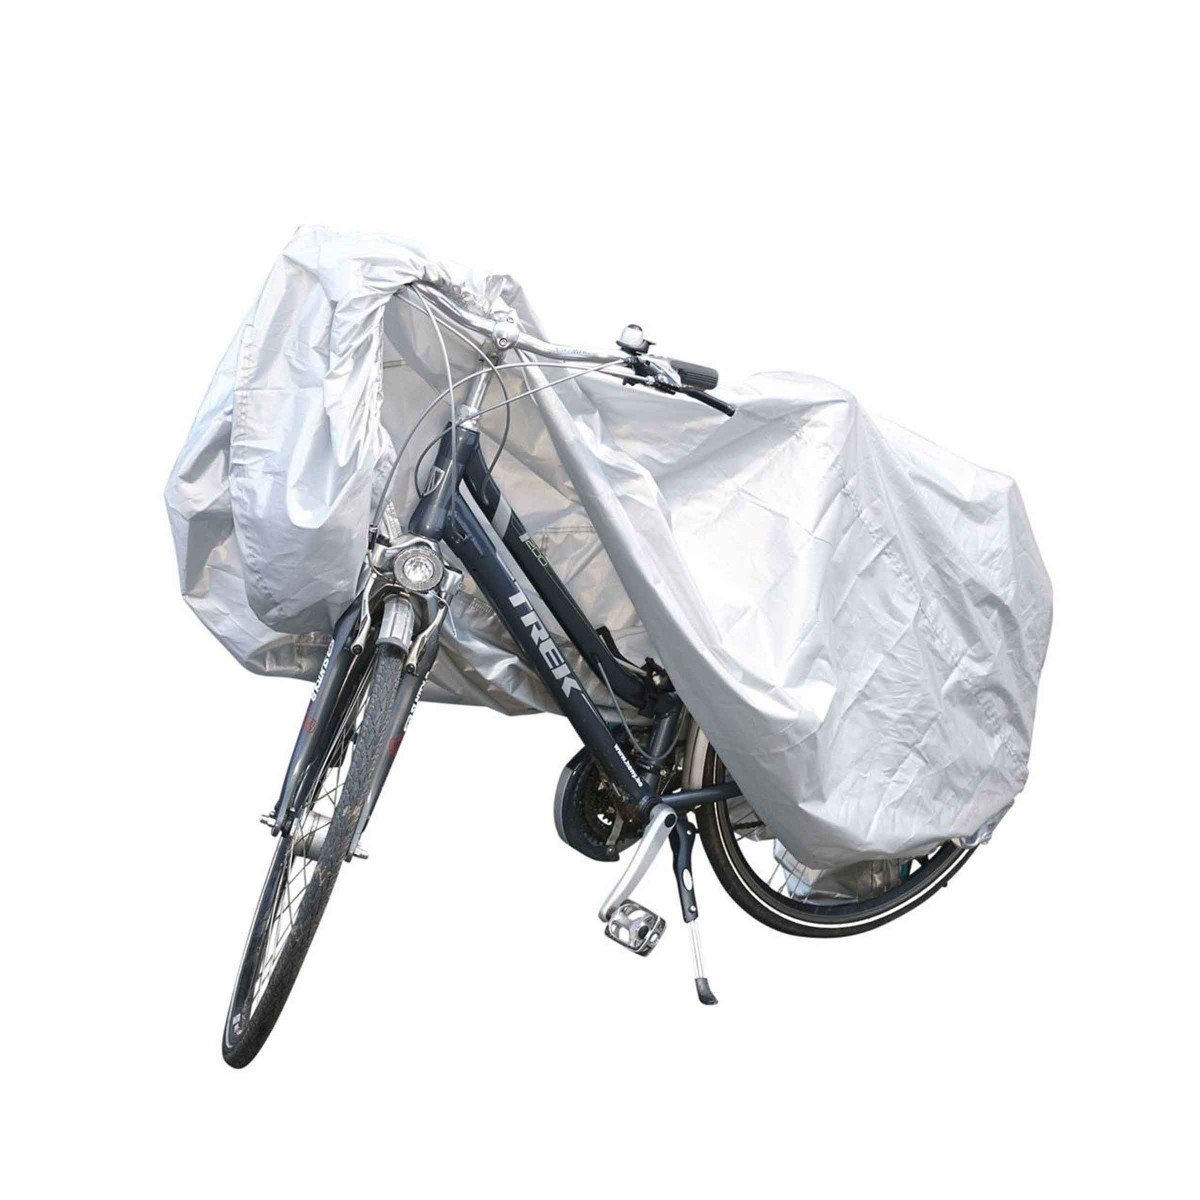 Housse de protection vélo imperméable 190x115x64CM - Provence Outillage